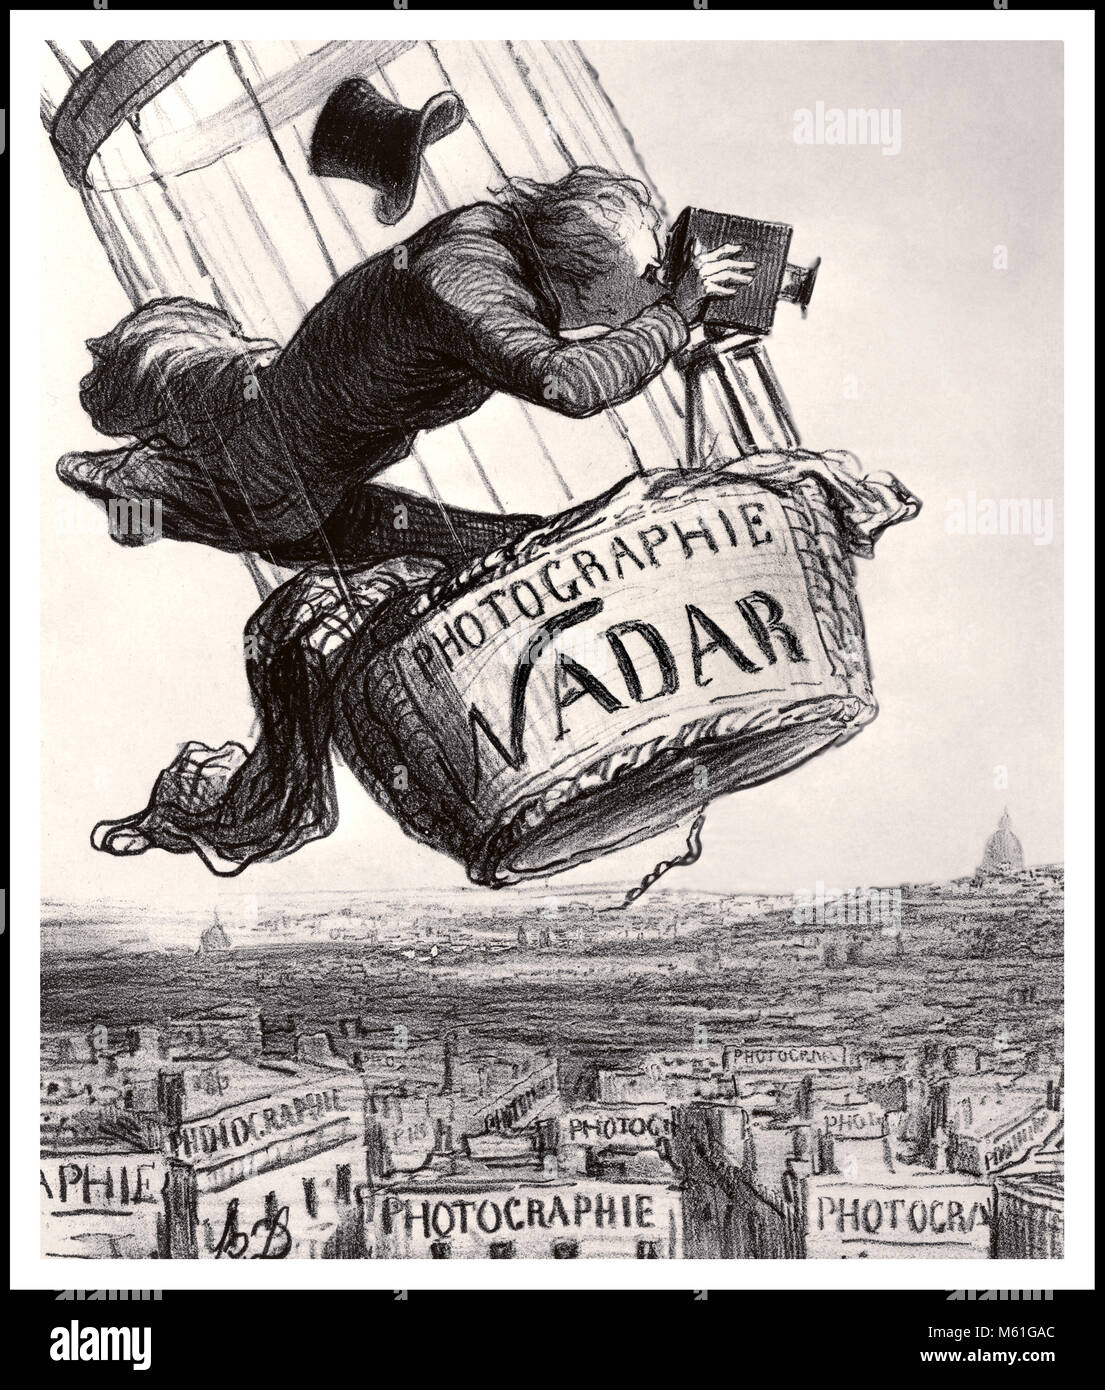 NADAR FOTOGRAF BALLONFAHRER Jahrgang 1800 Cartoon des französischen Fotografen Nadar gefeiert, ab der die Technik von Luftaufnahmen aus einem Ballon Stockfoto